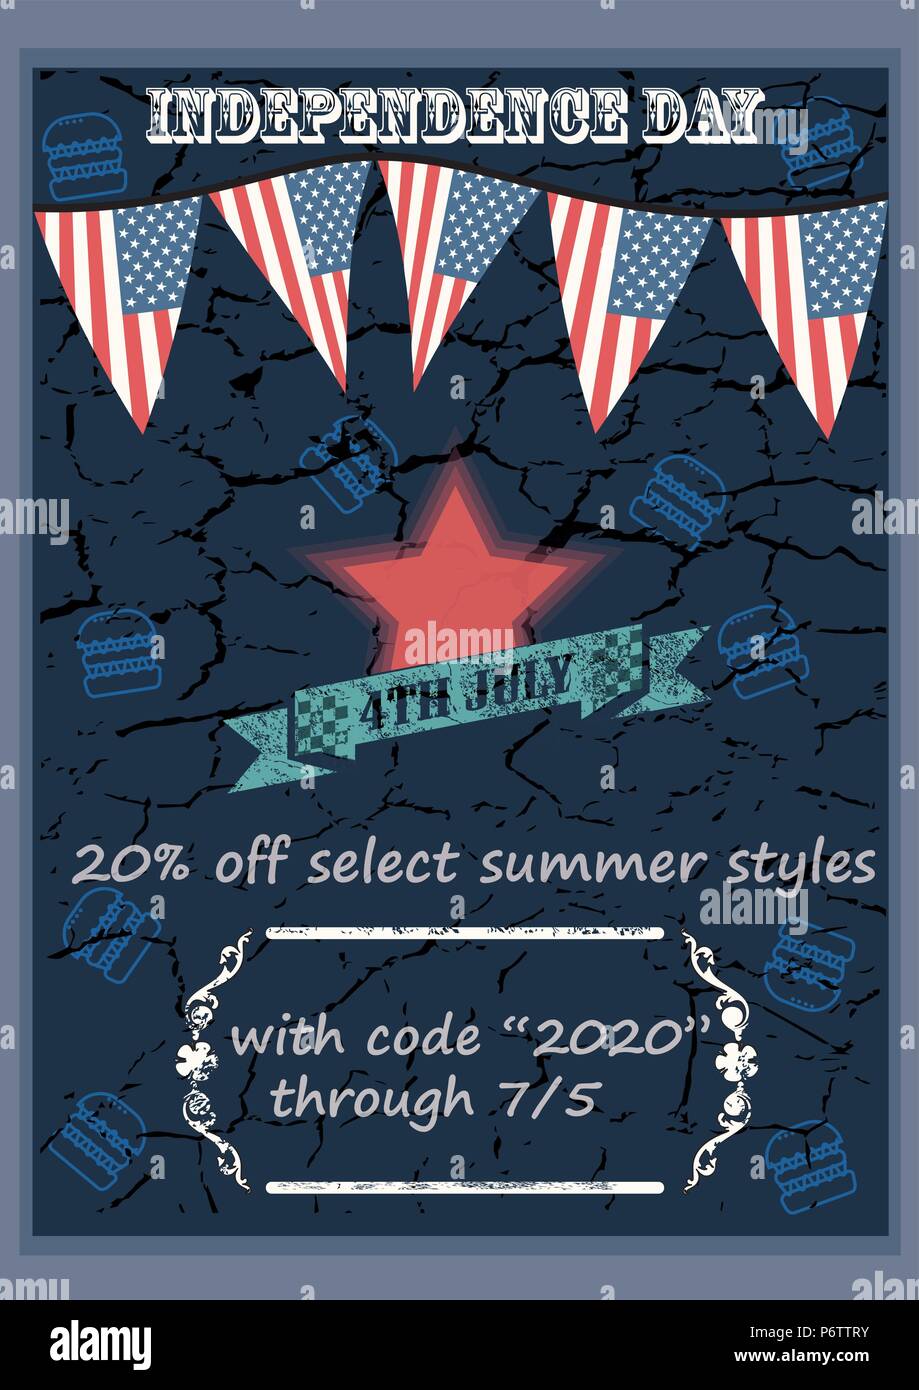 Poster festeggiare felice 4 luglio - Giorno di Indipendenza. Stili di estate in vendita con uno sconto del 20%. National American holiday evento. Illustrazione vettoriale EPS10. Illustrazione Vettoriale